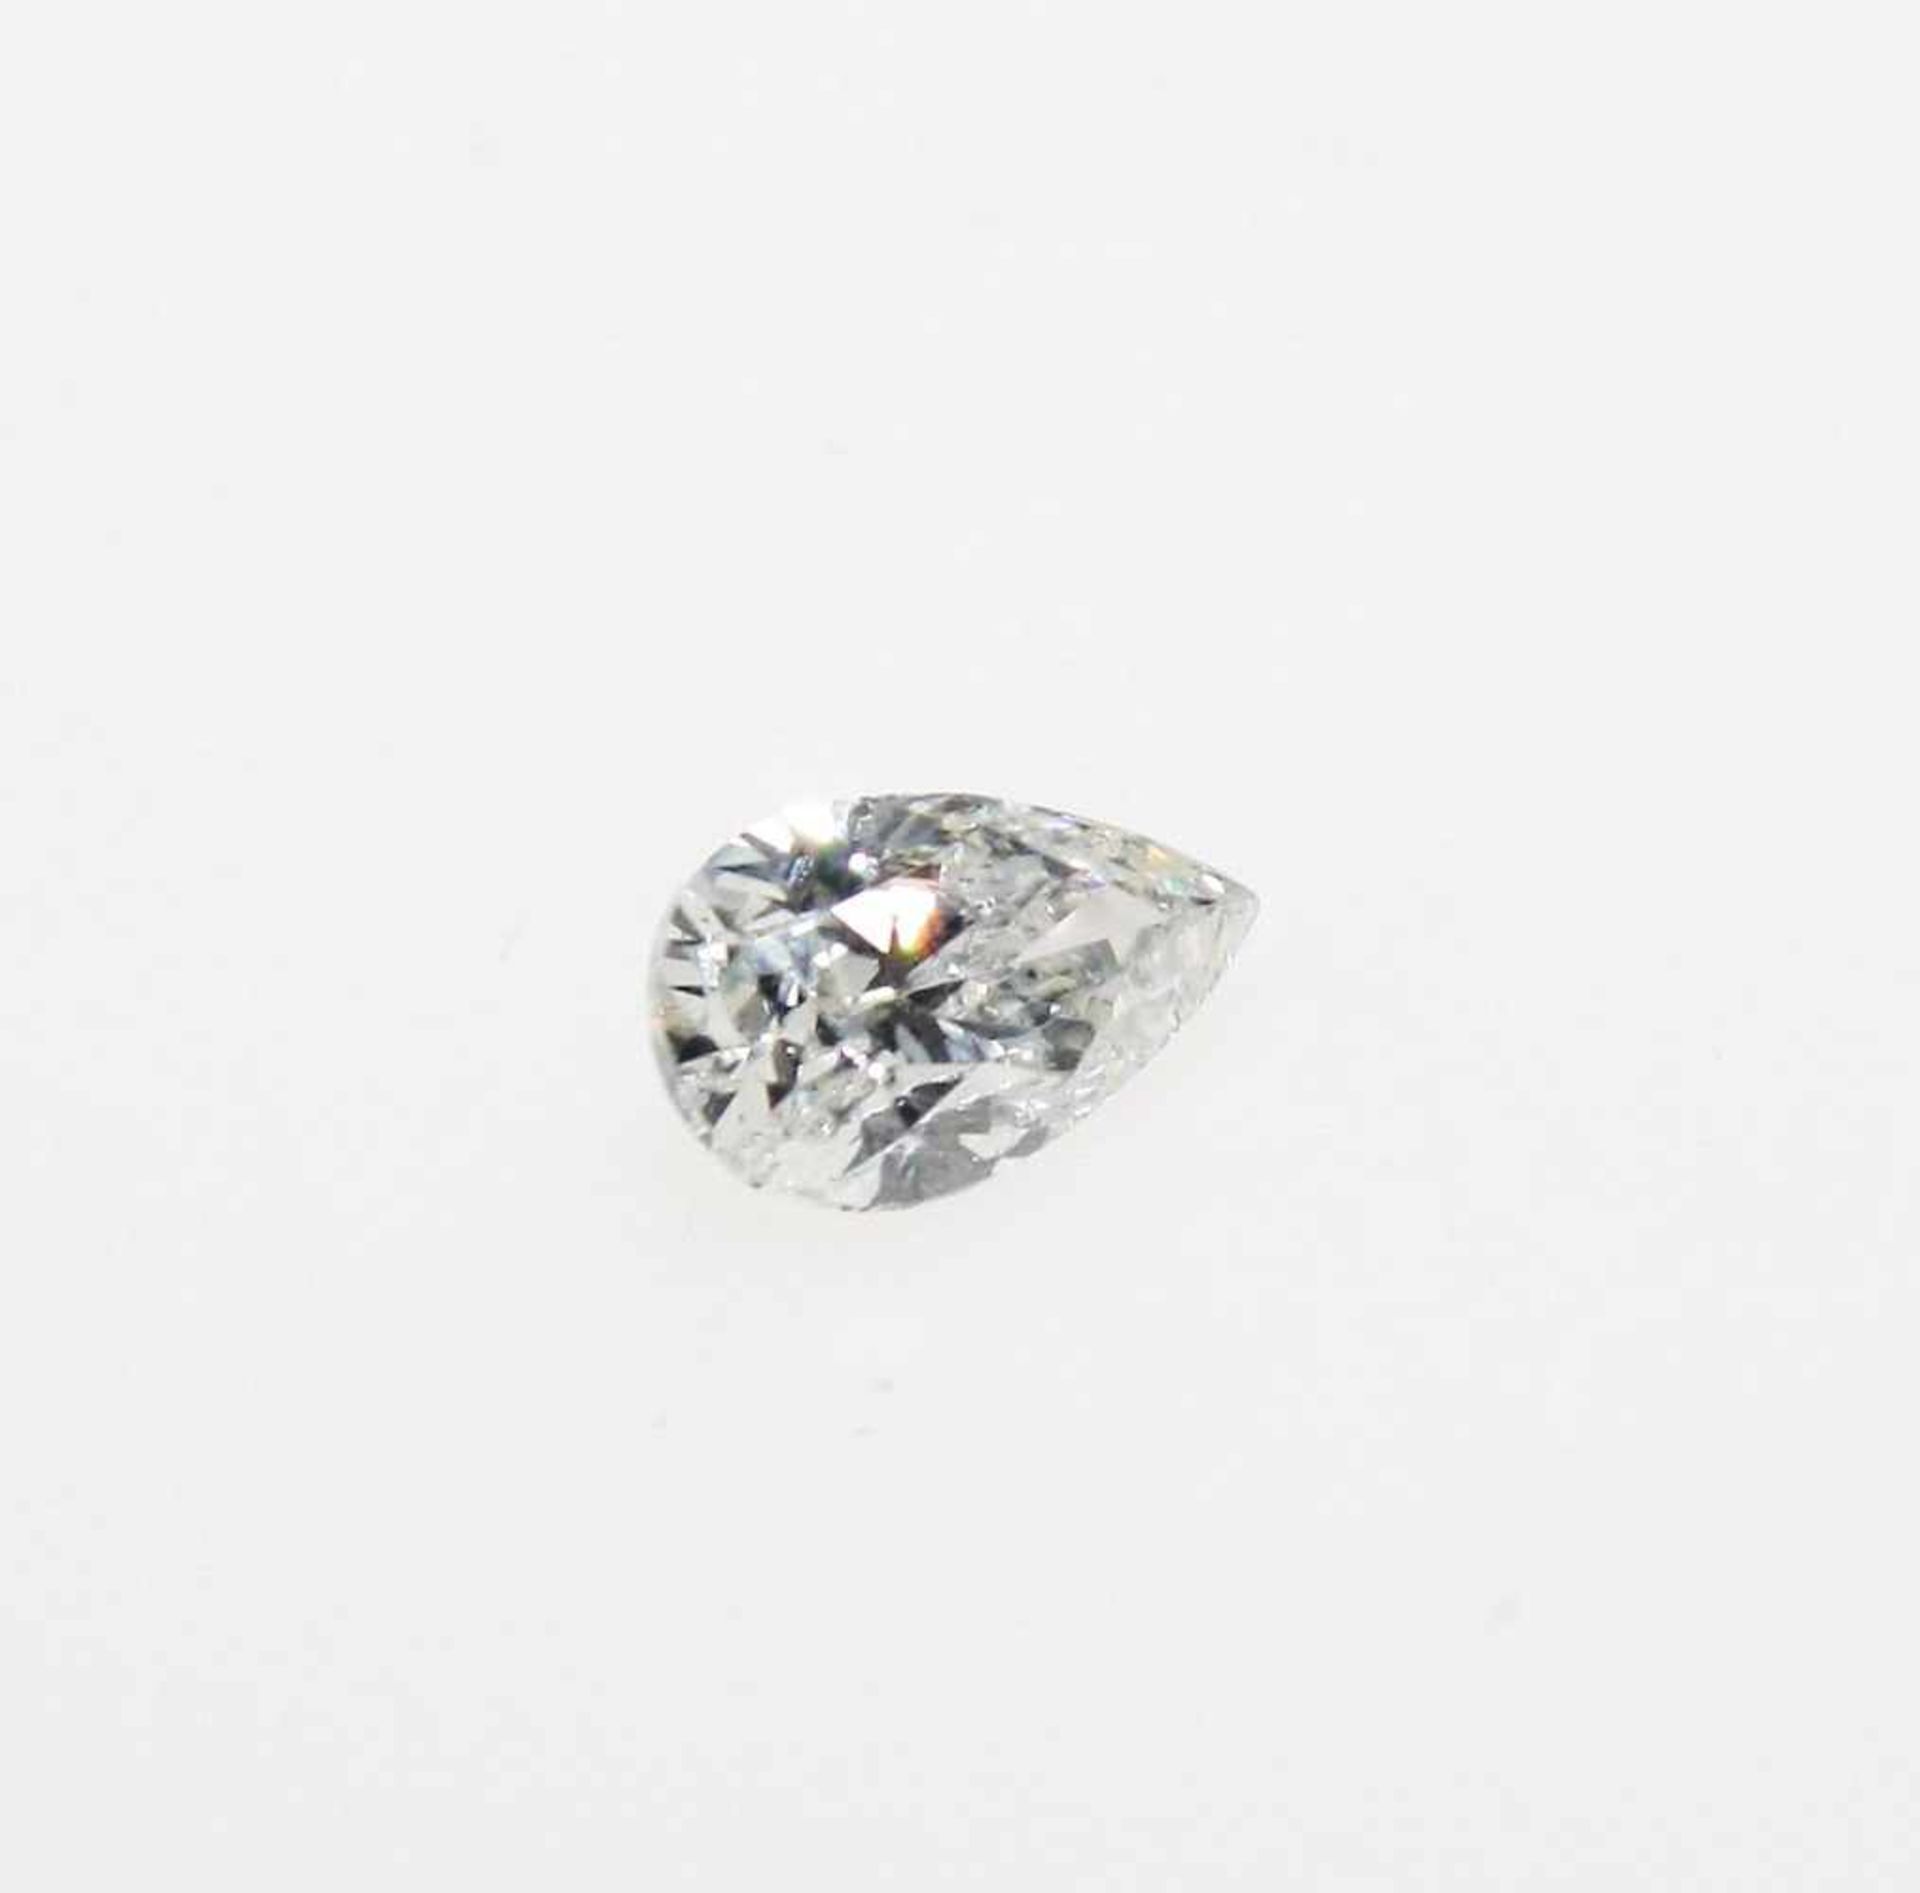 Ein ungefasster Diamanten in Tropfenschliff, ausgewogen 0,95 ct mit Expertise IGL: top wesselton (